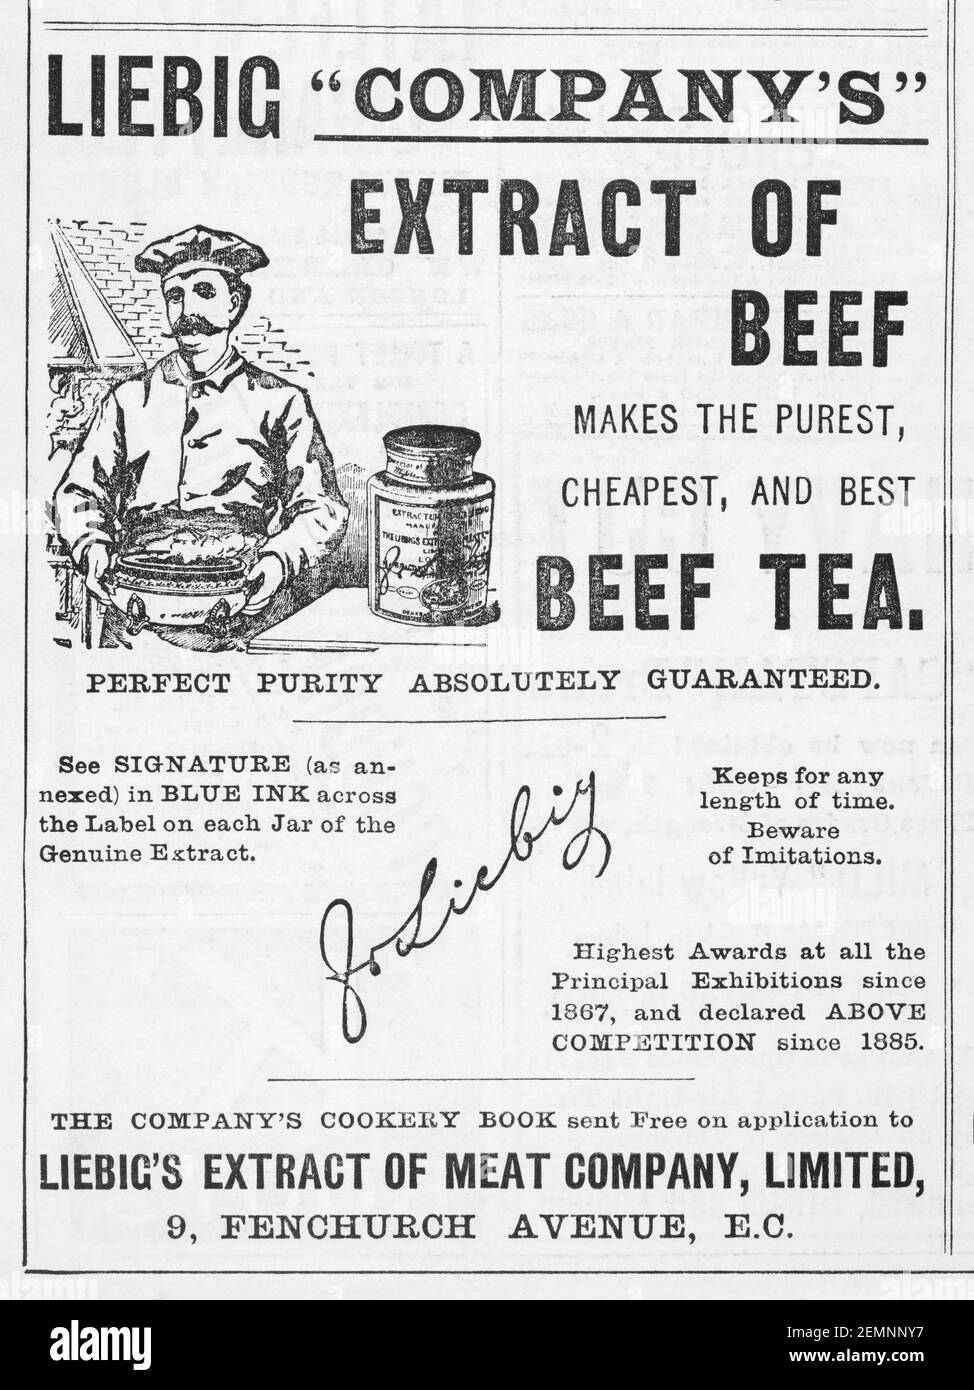 Publicité sur l'extrait de bœuf et le thé de bœuf de l'ancienne époque victorienne Liebig de 1894 - avant l'aube des normes publicitaires. Histoire de la publicité, de vieilles publicités alimentaires. Banque D'Images